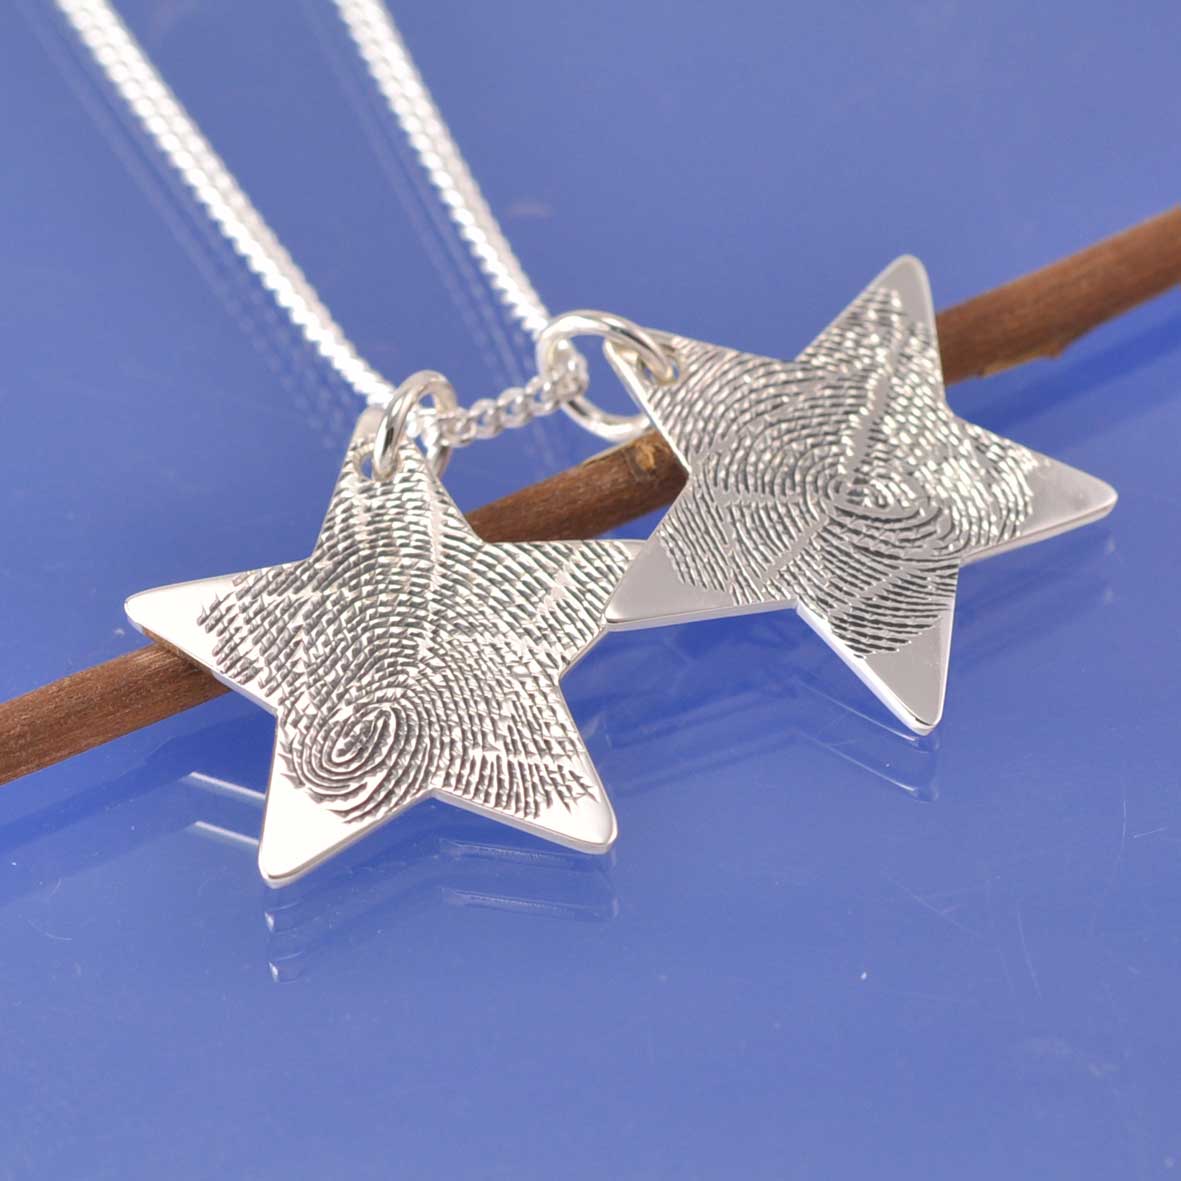 Fingerprint Necklace - Stars Pendant by Chris Parry Jewellery